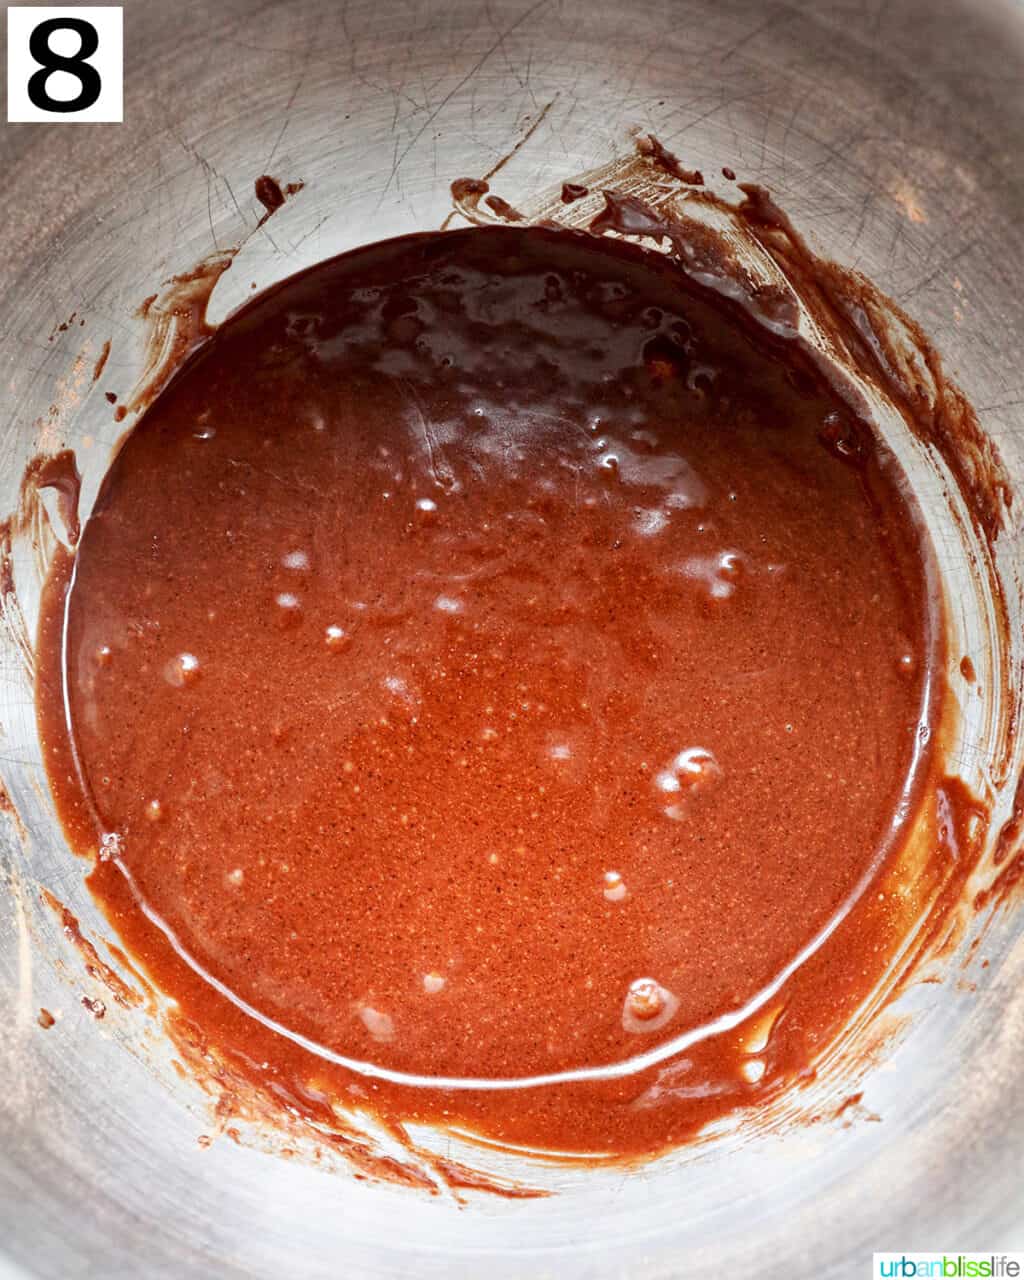 bowl of chocolate fudge cupcake batter.